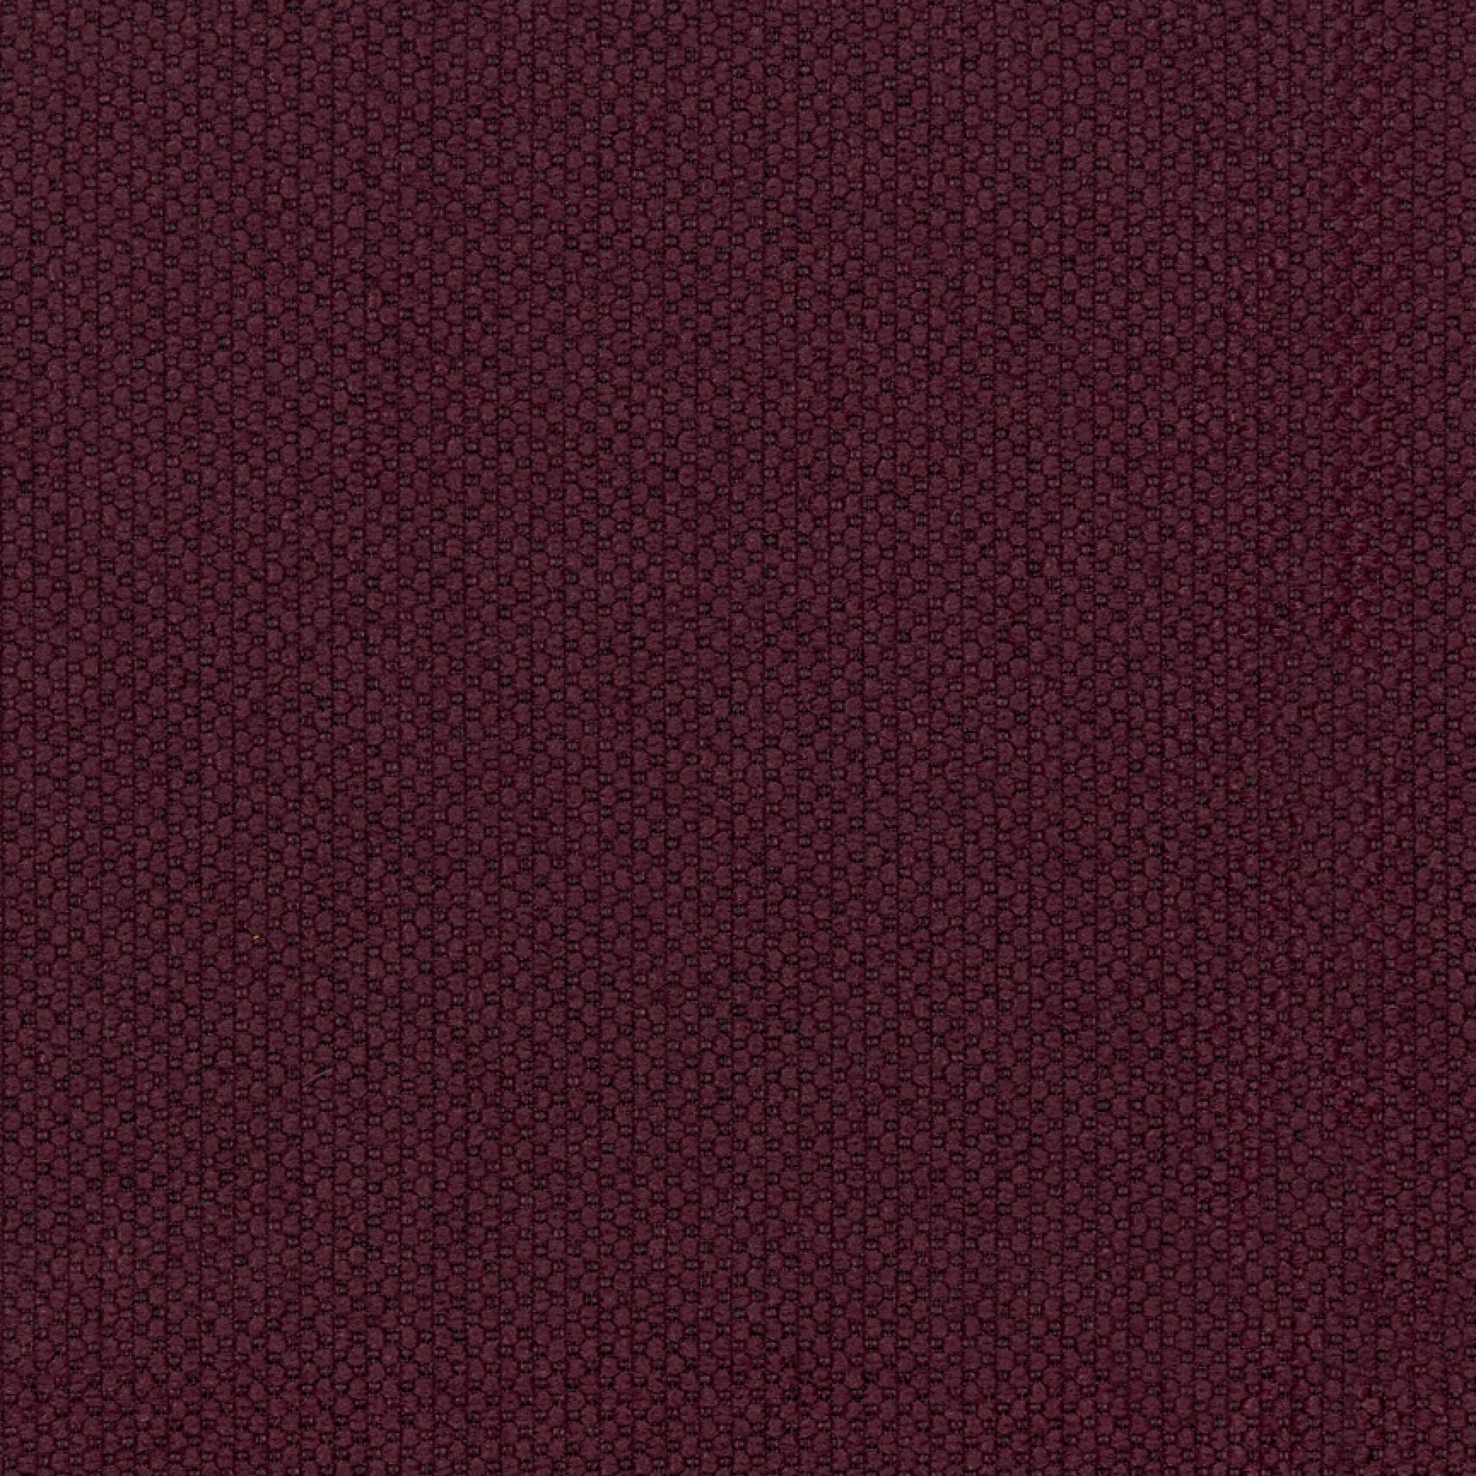 Fabric sample Merit 0040 purple